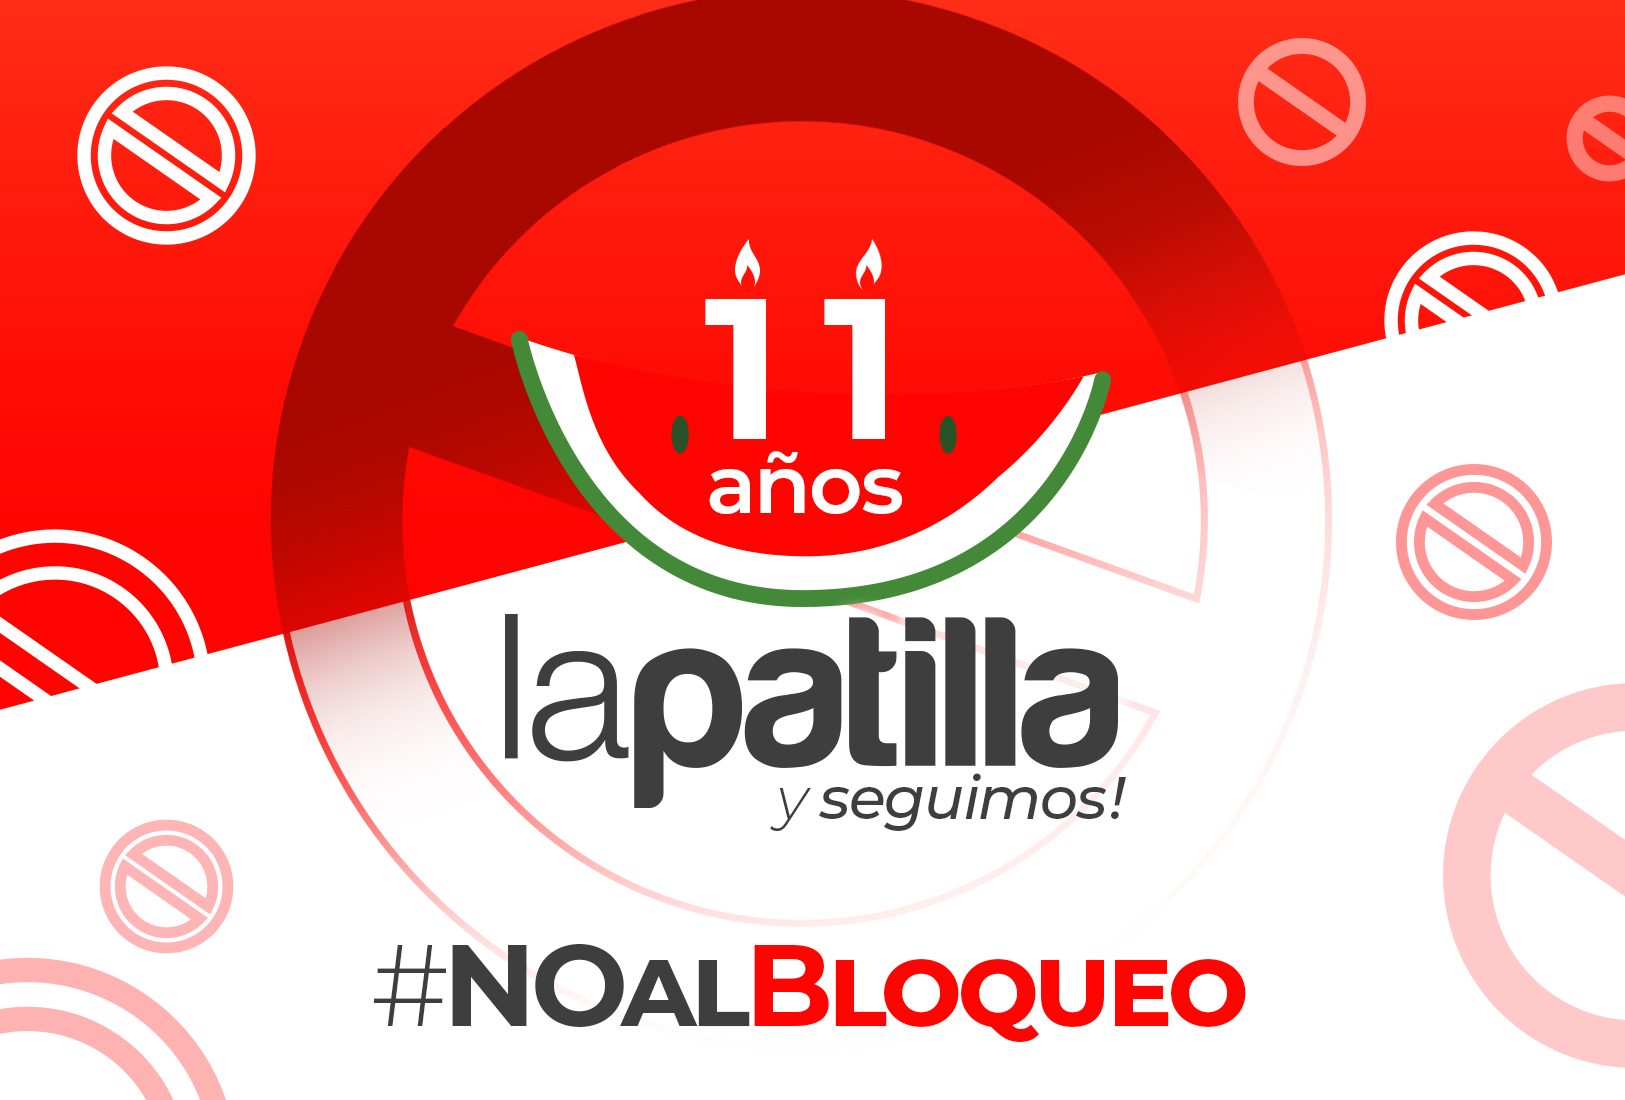 LaPatilla: Hoy es nuestro décimo primer aniversario